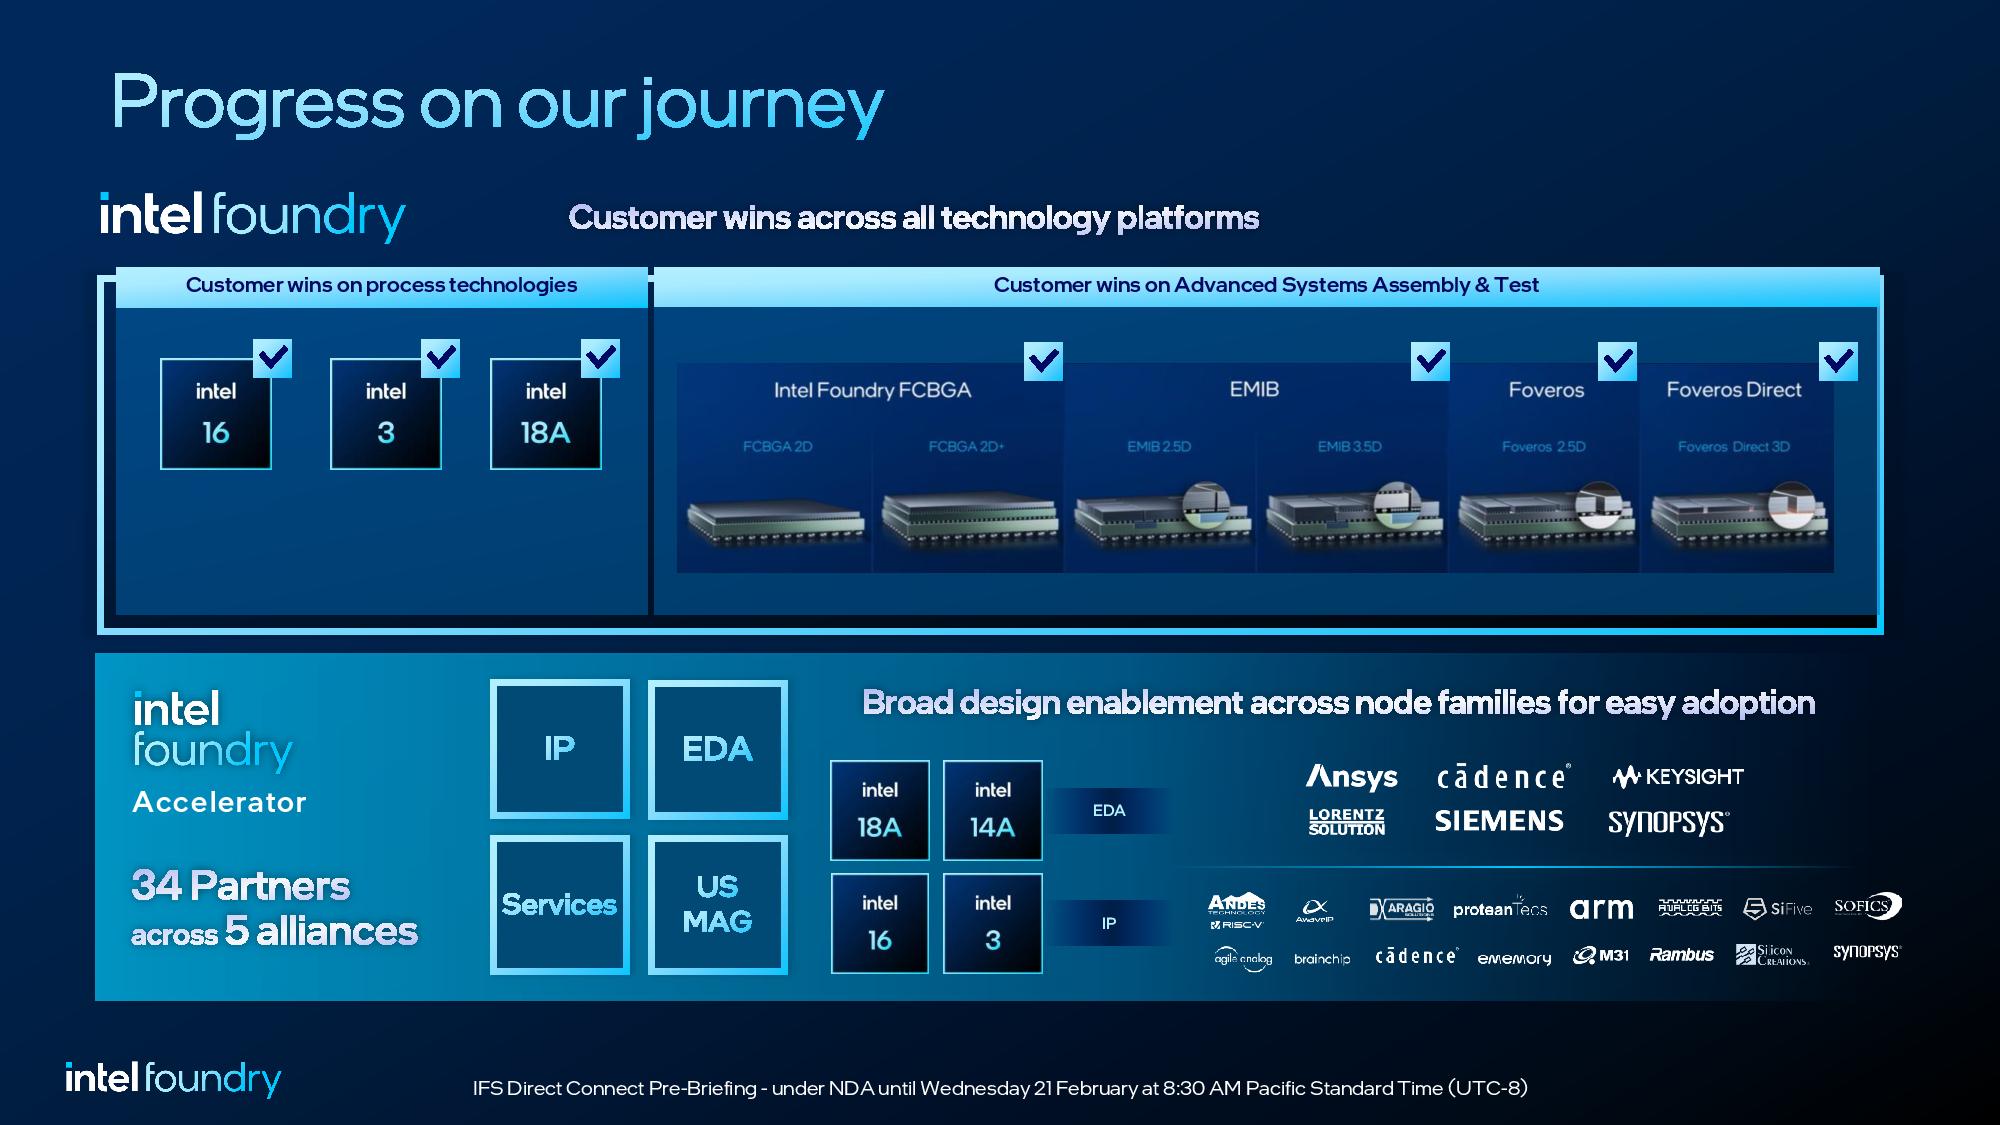 Una diapositiva que muestra los triunfos del cliente de fundición de Intel